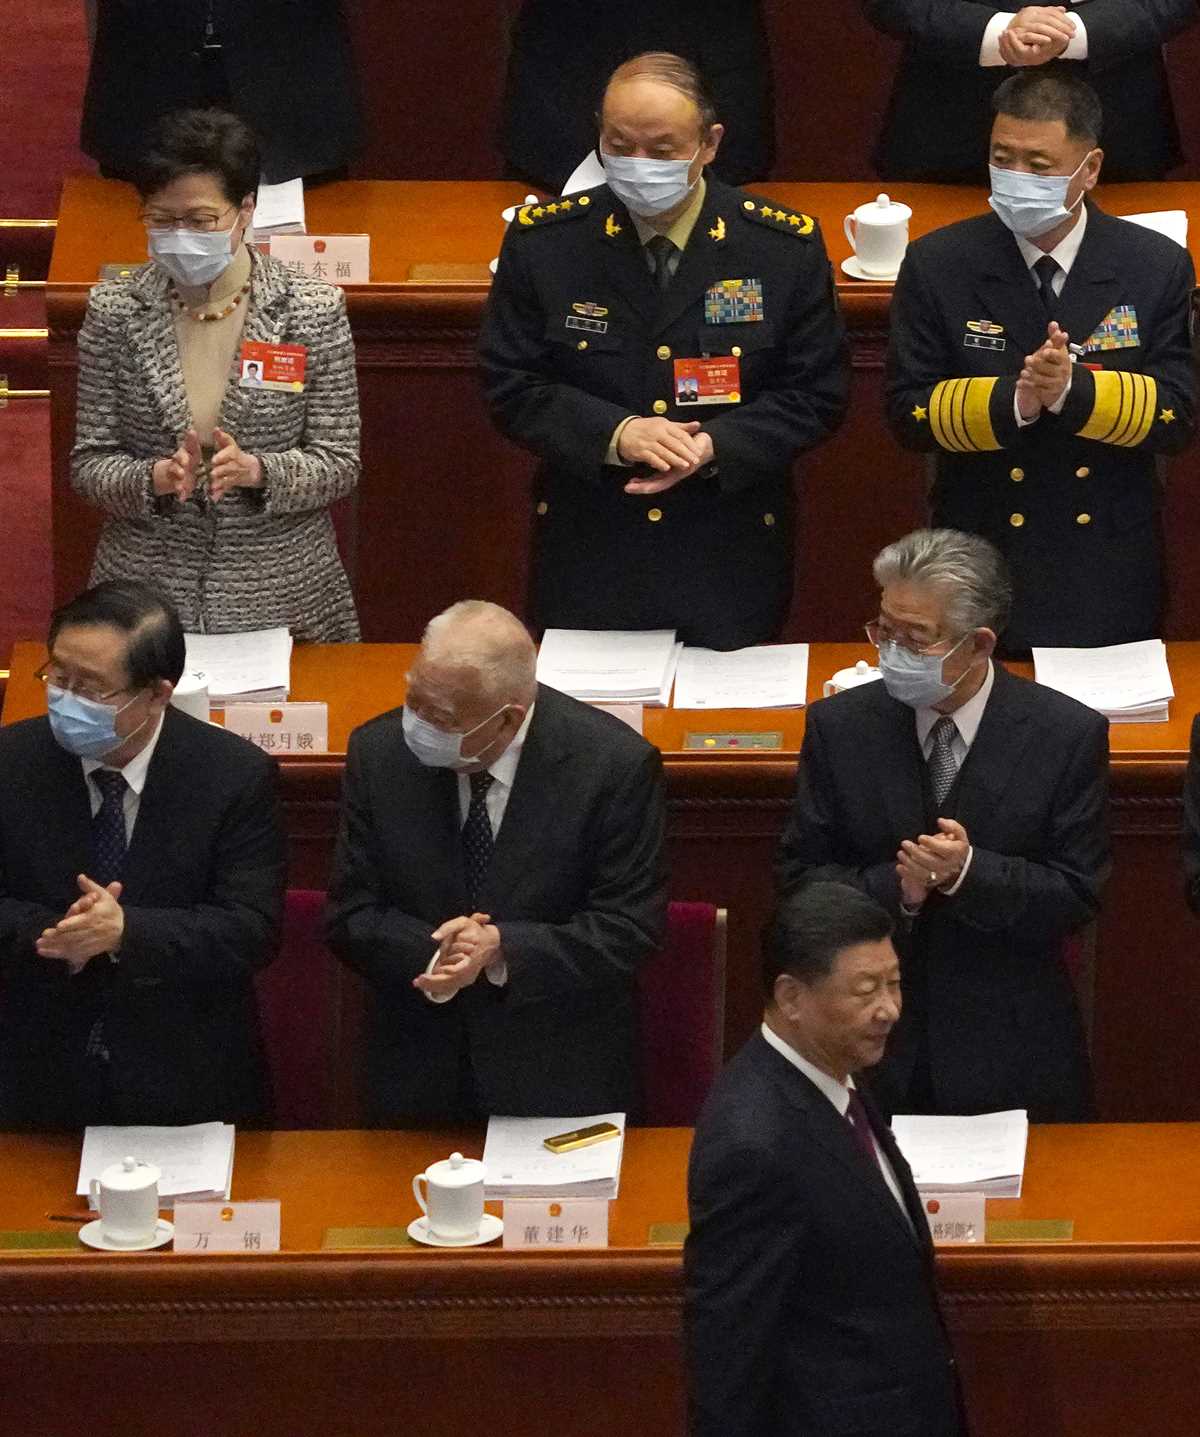 Xi Jinping, Carrie Lam